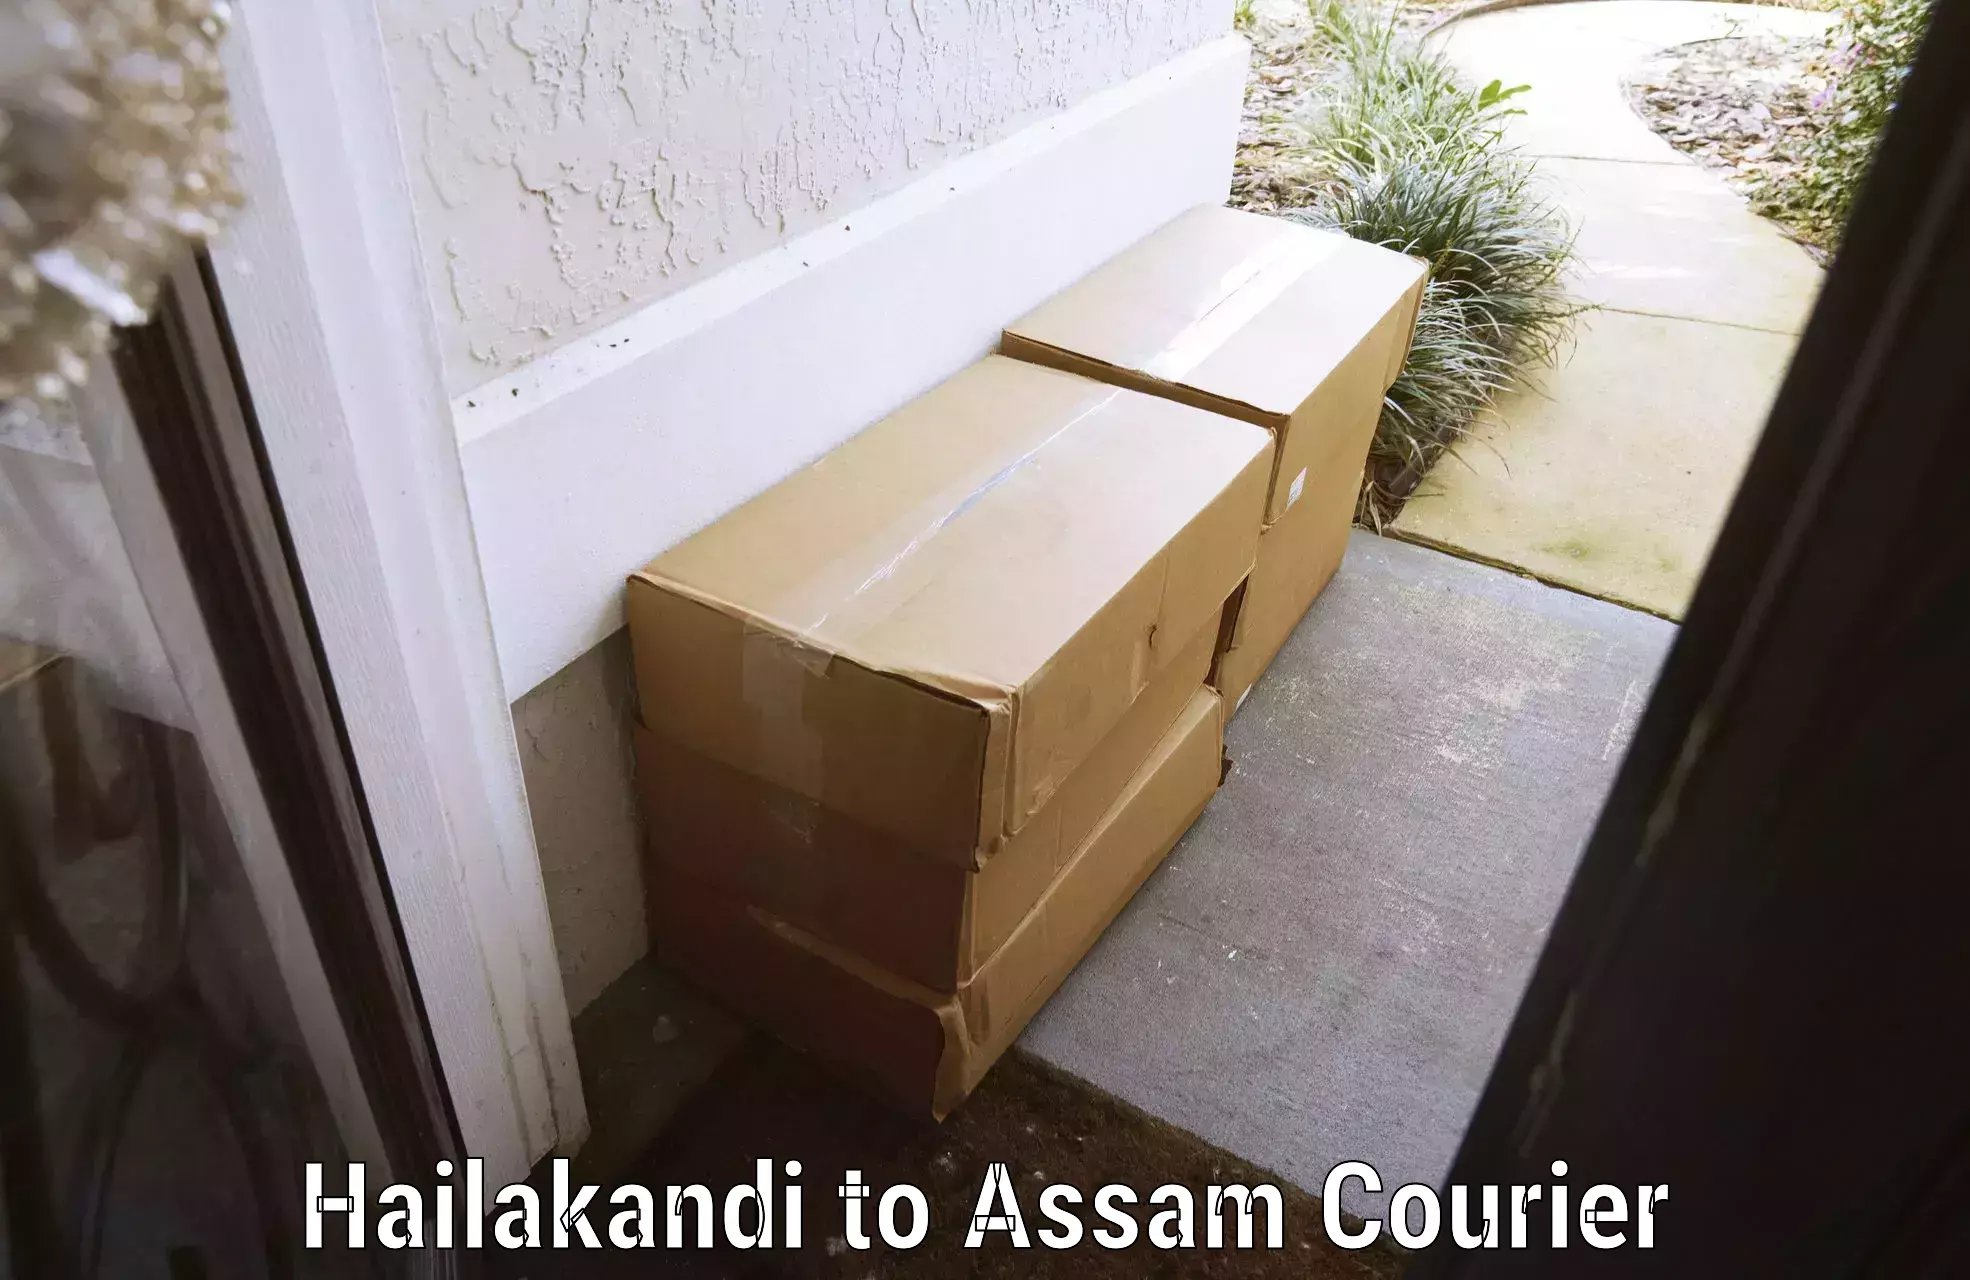 Luggage delivery estimate Hailakandi to Sarupathar